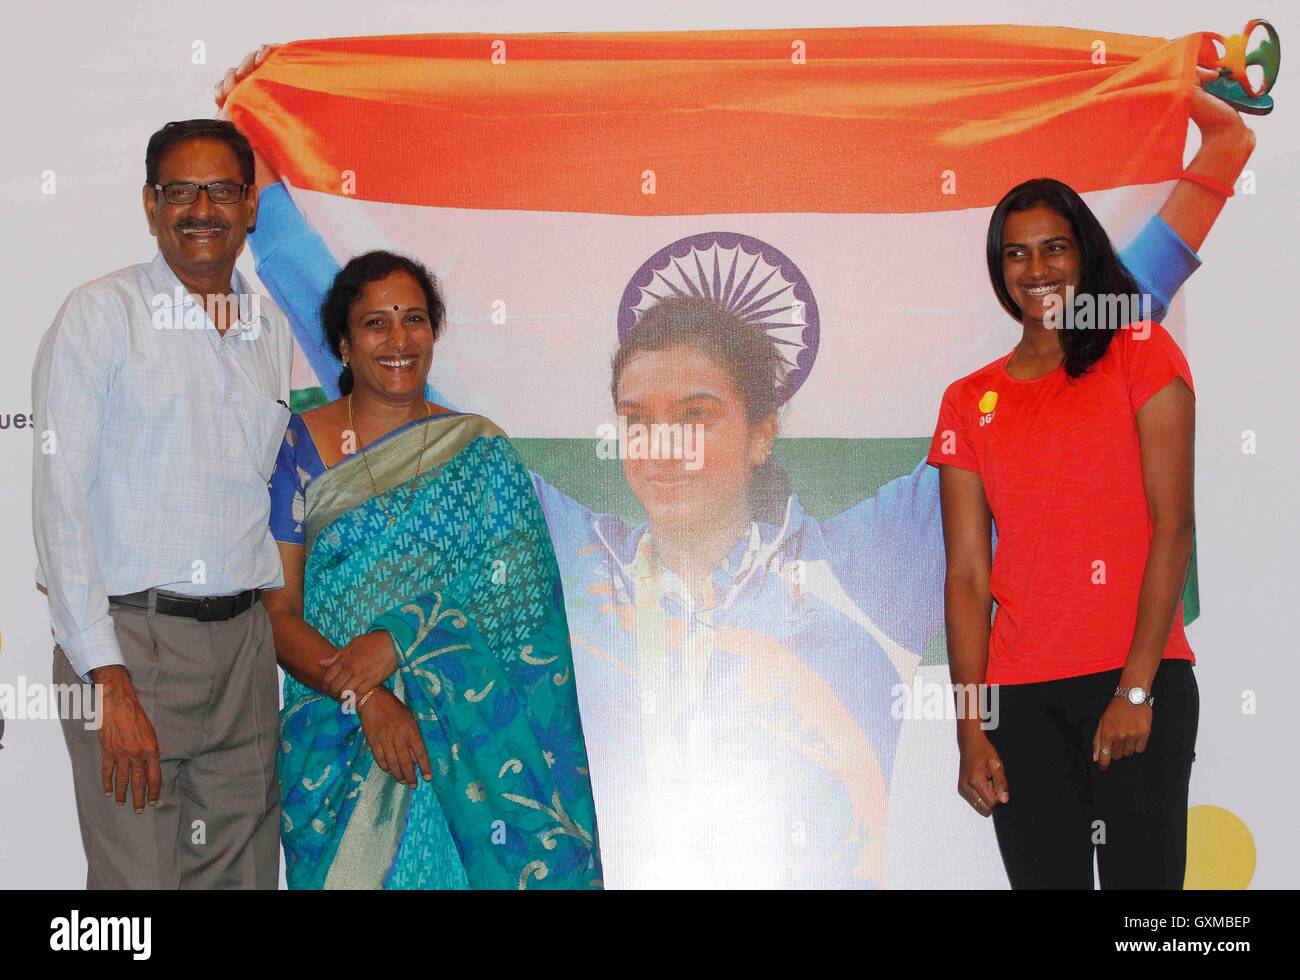 Joueur indien de badminton médaillé d'argent P V Sindhu parents PV Ramana P Vijaya felicitation fonction organisée OGQ Bombay Mumbai Maharashtra Inde Asie Indien asiatique Banque D'Images